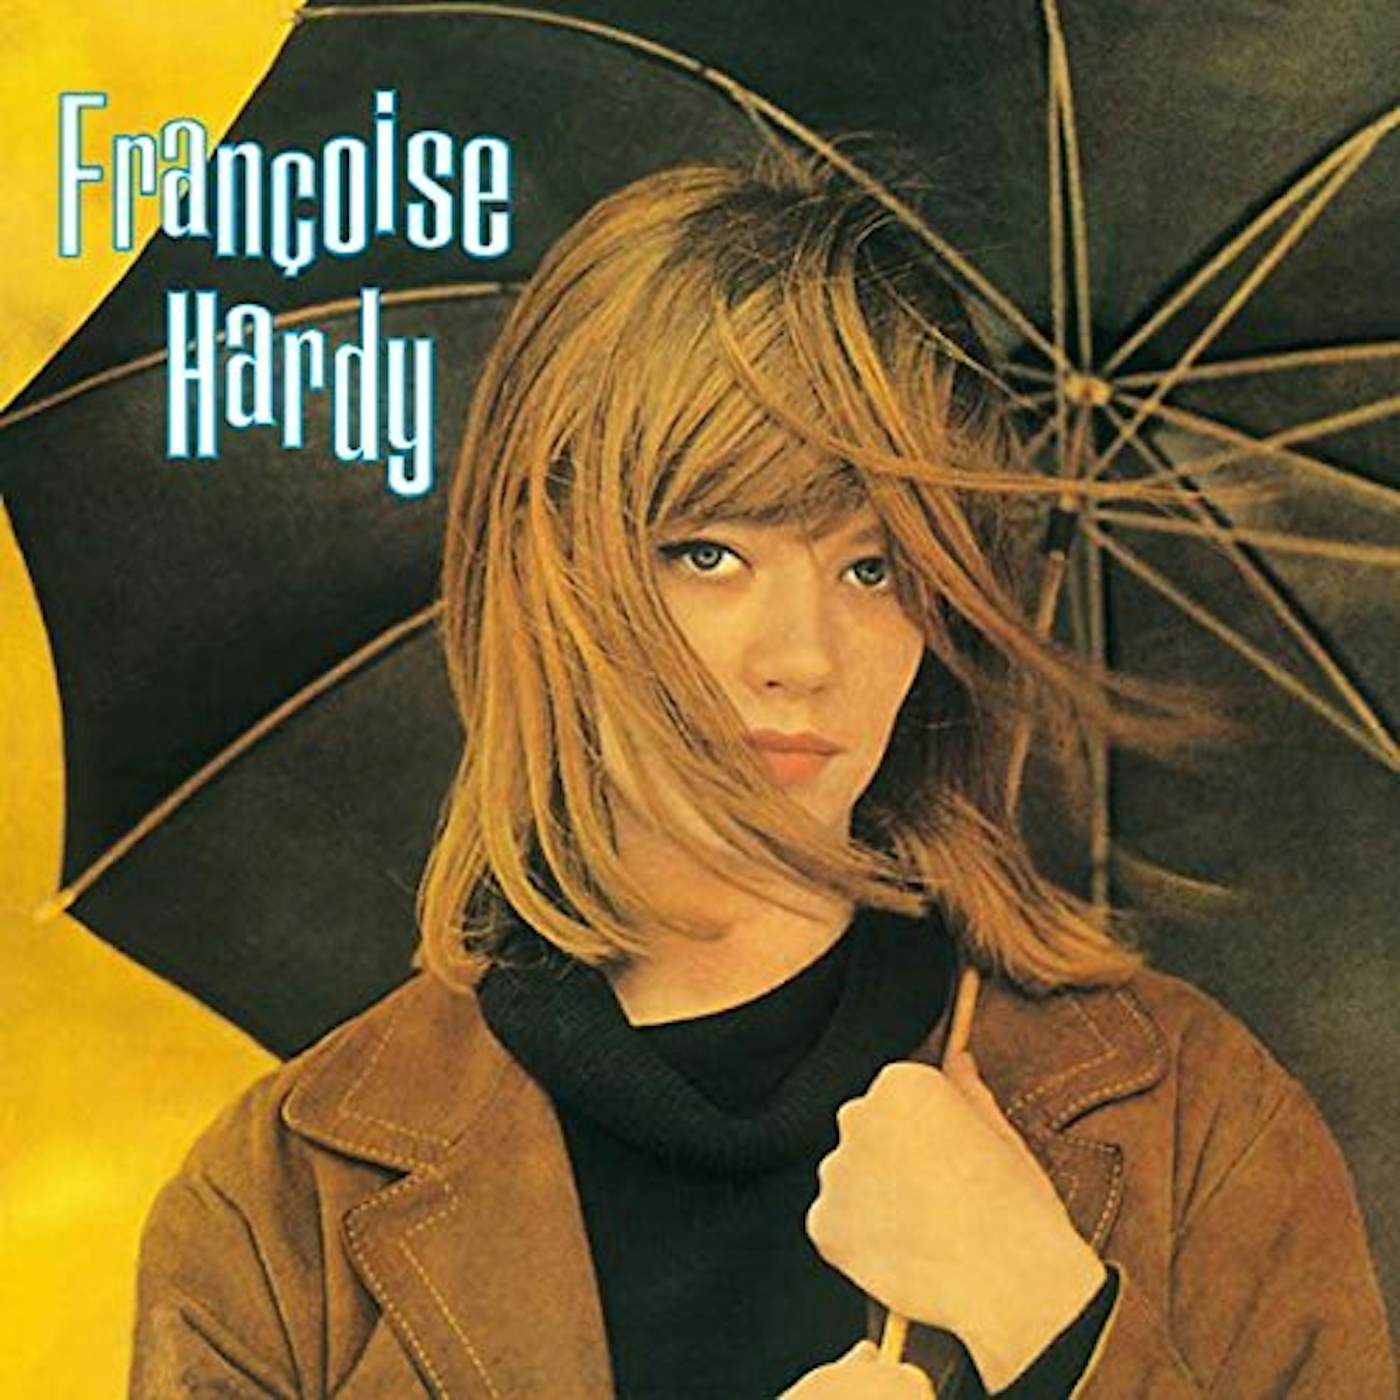 Françoise Hardy Vinyl Record